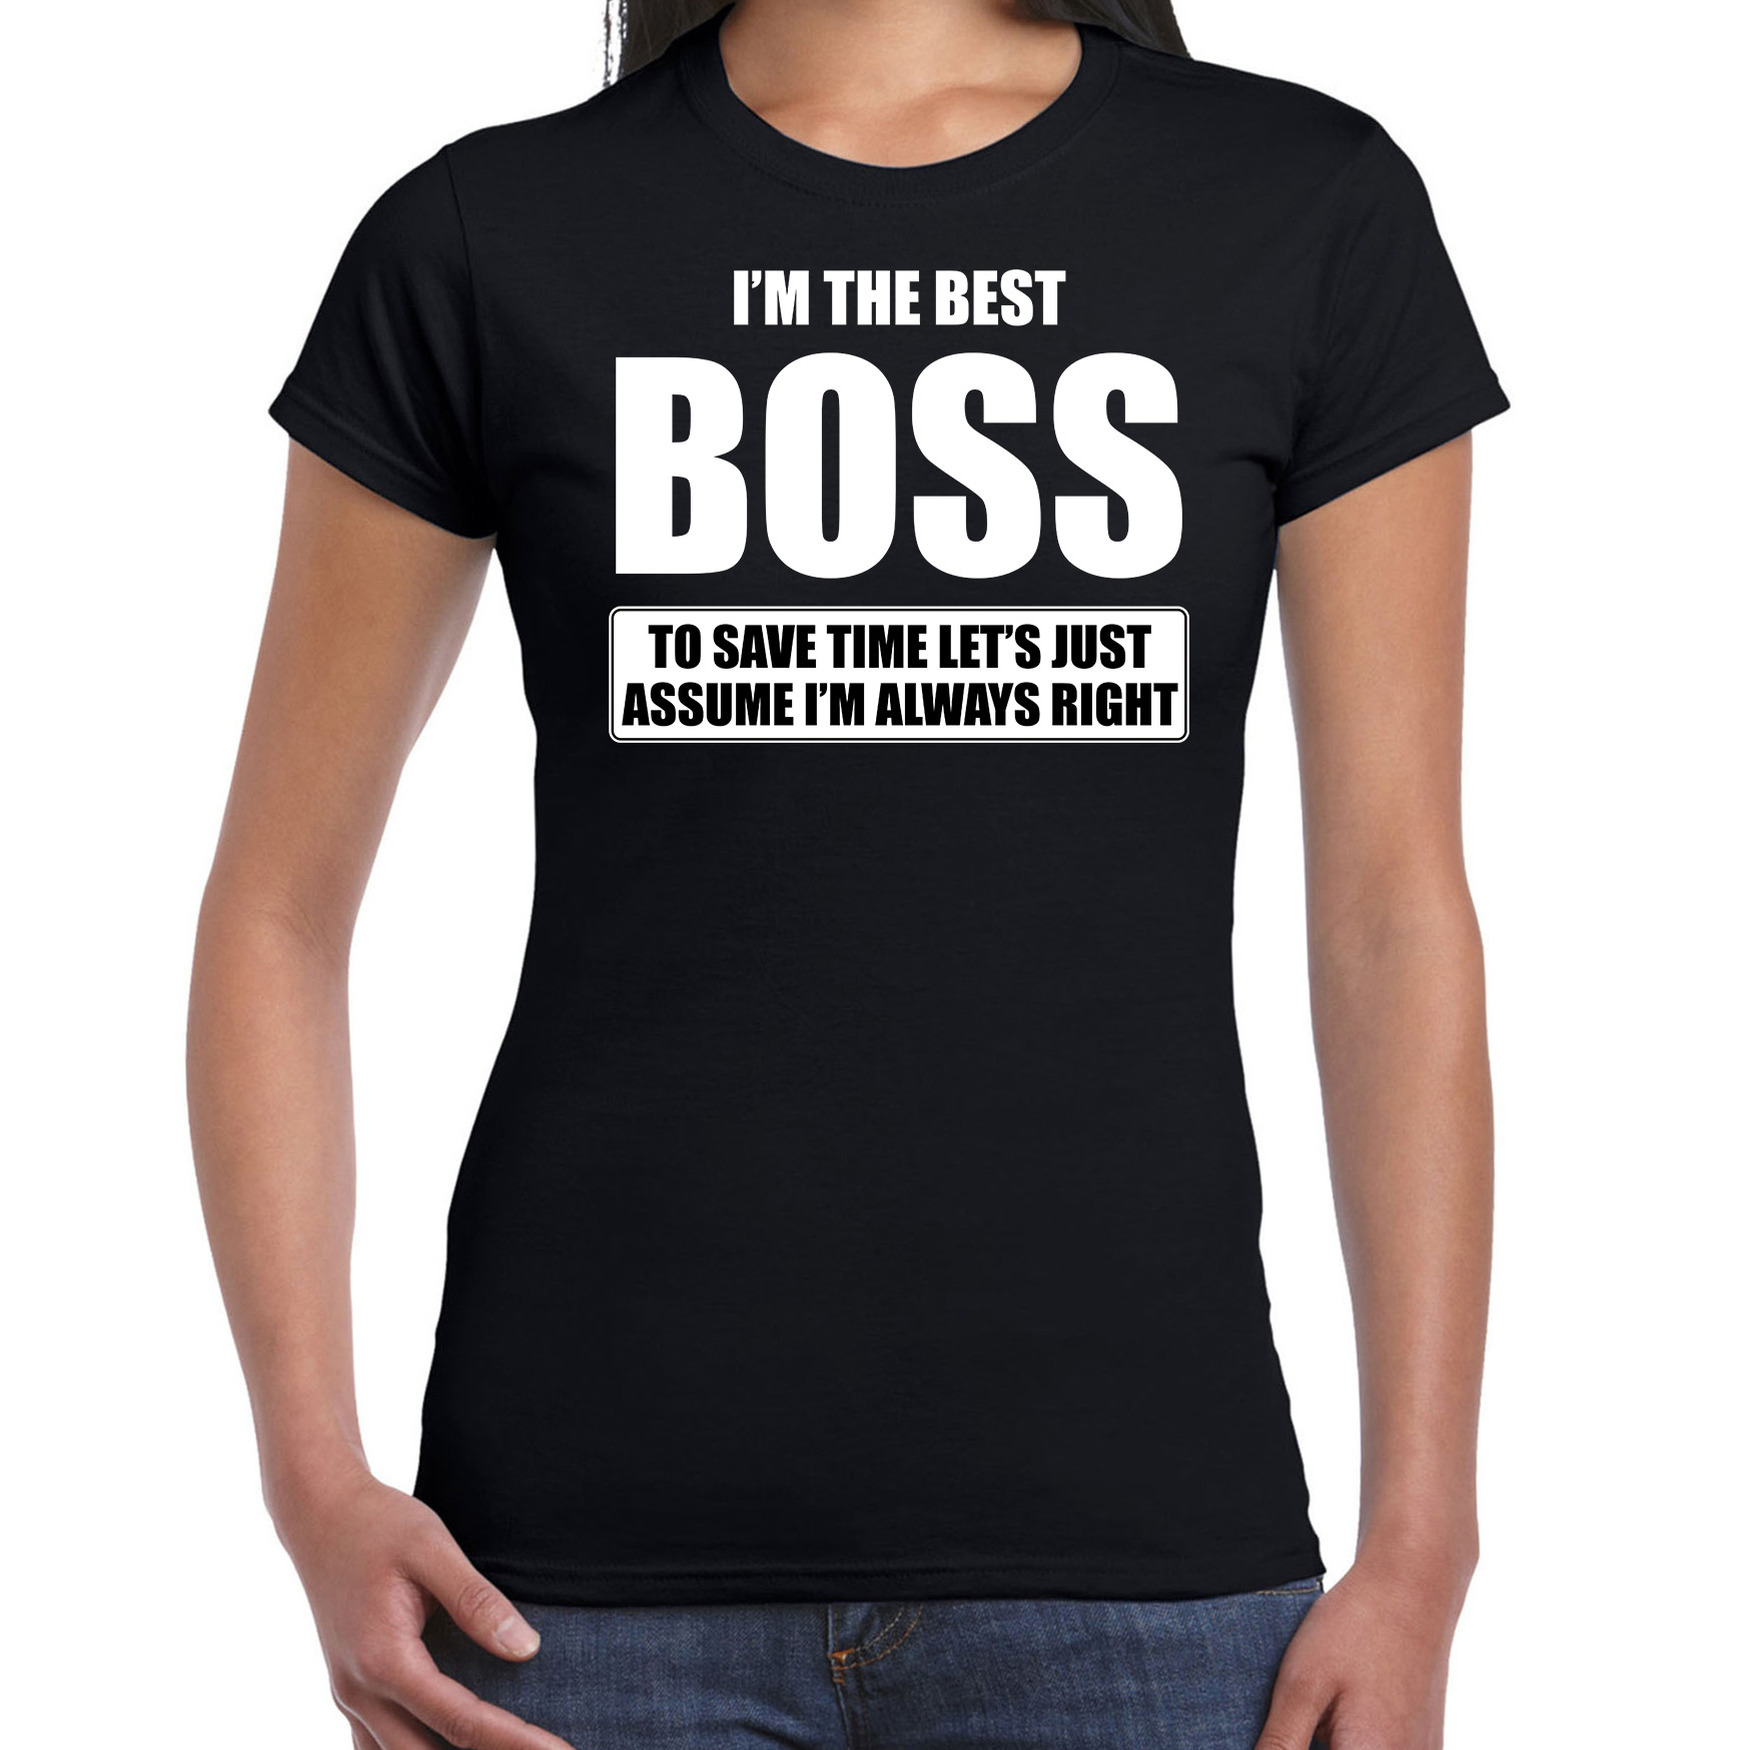 I'm the best boss t-shirt zwart dames De beste baas cadeau